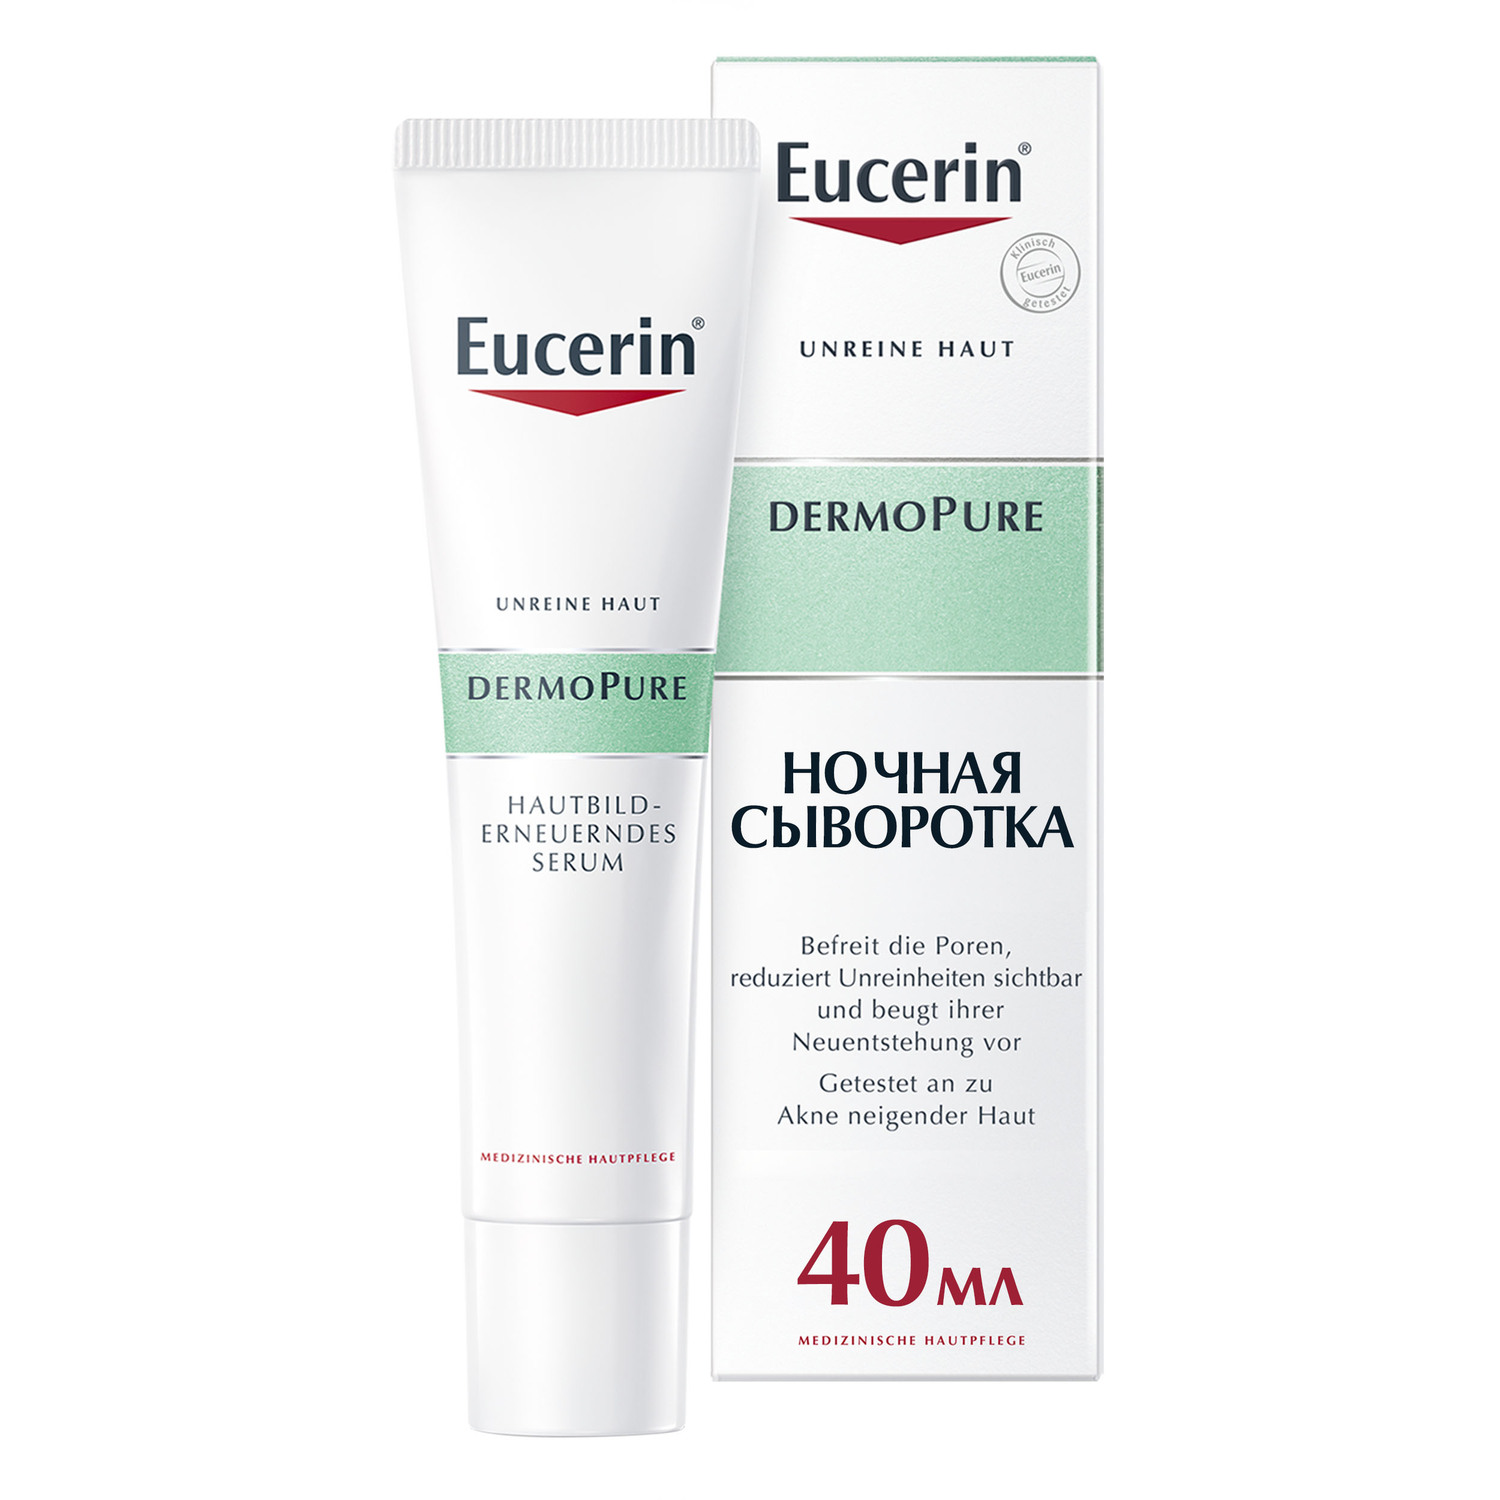 Eucerin Сыворотка для проблемной кожи, 40 мл (Eucerin, DermoPURE)